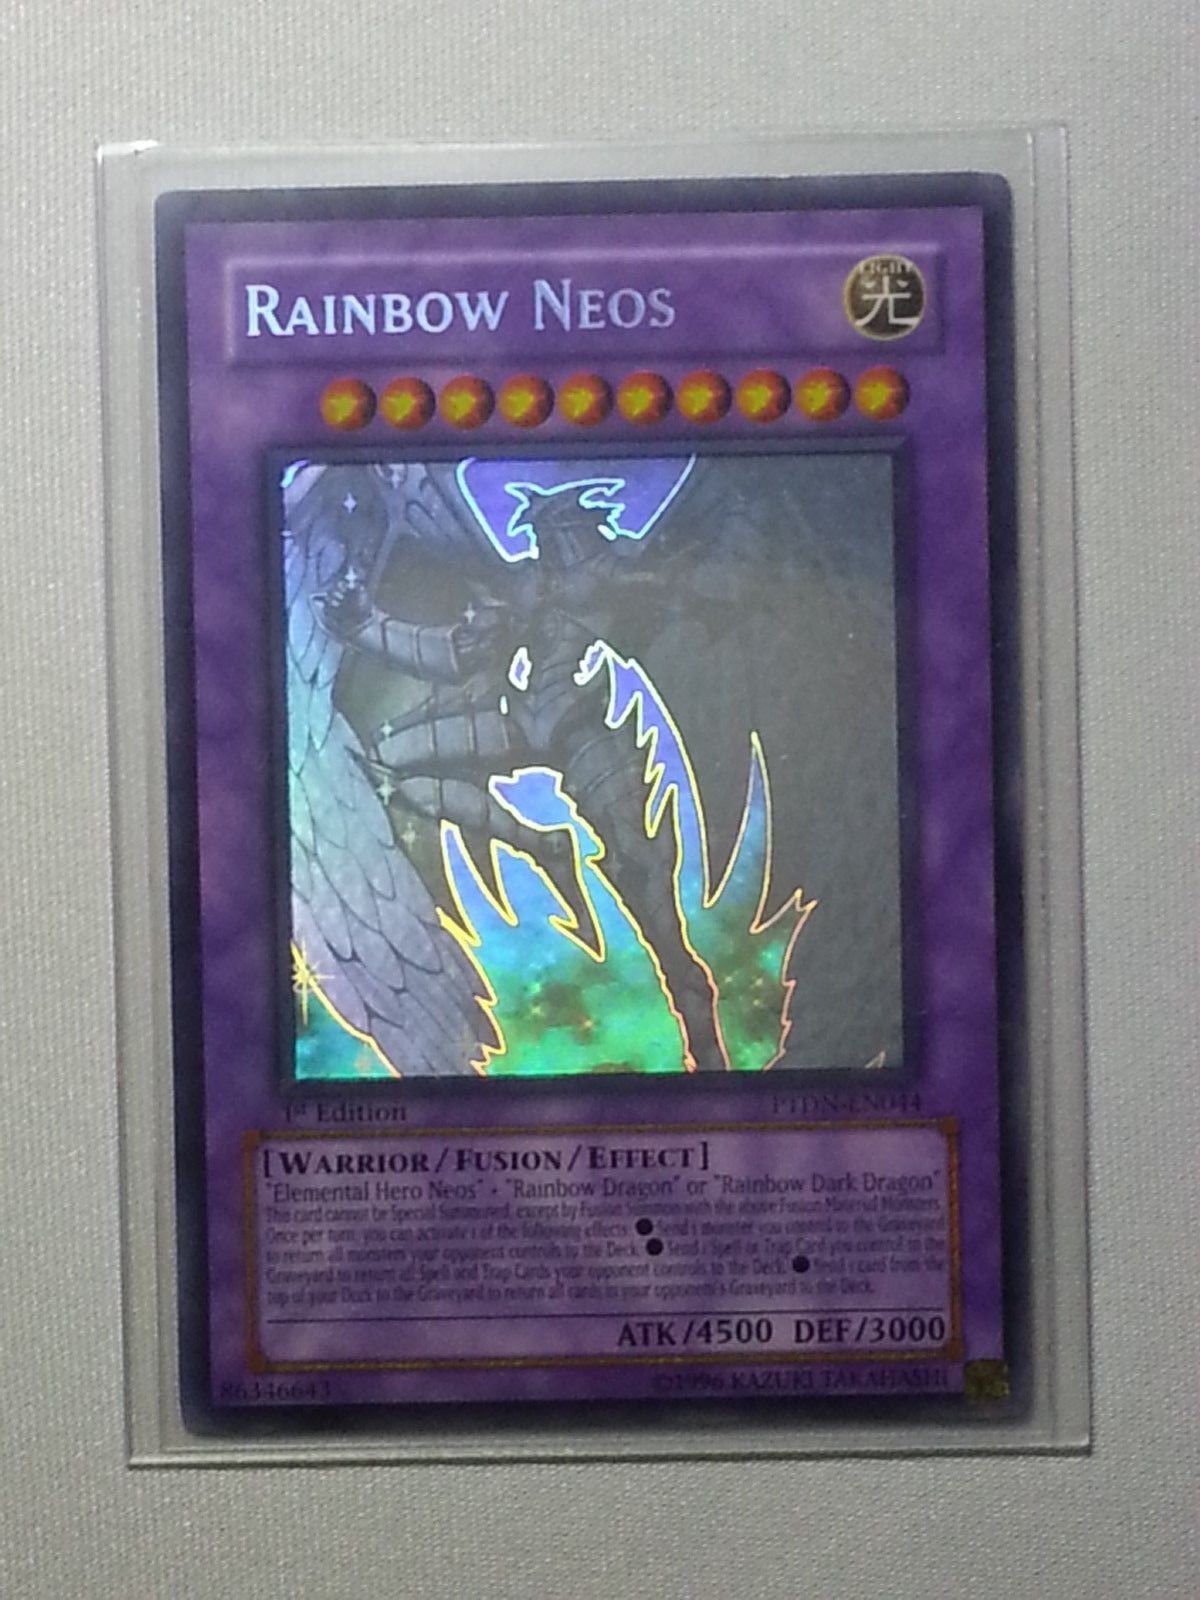 Neos dell'Arcobaleno ☻ Comune ☻ RYMP EN019 ☻ YUGIOH Carta INGLESE Rainbow Neos